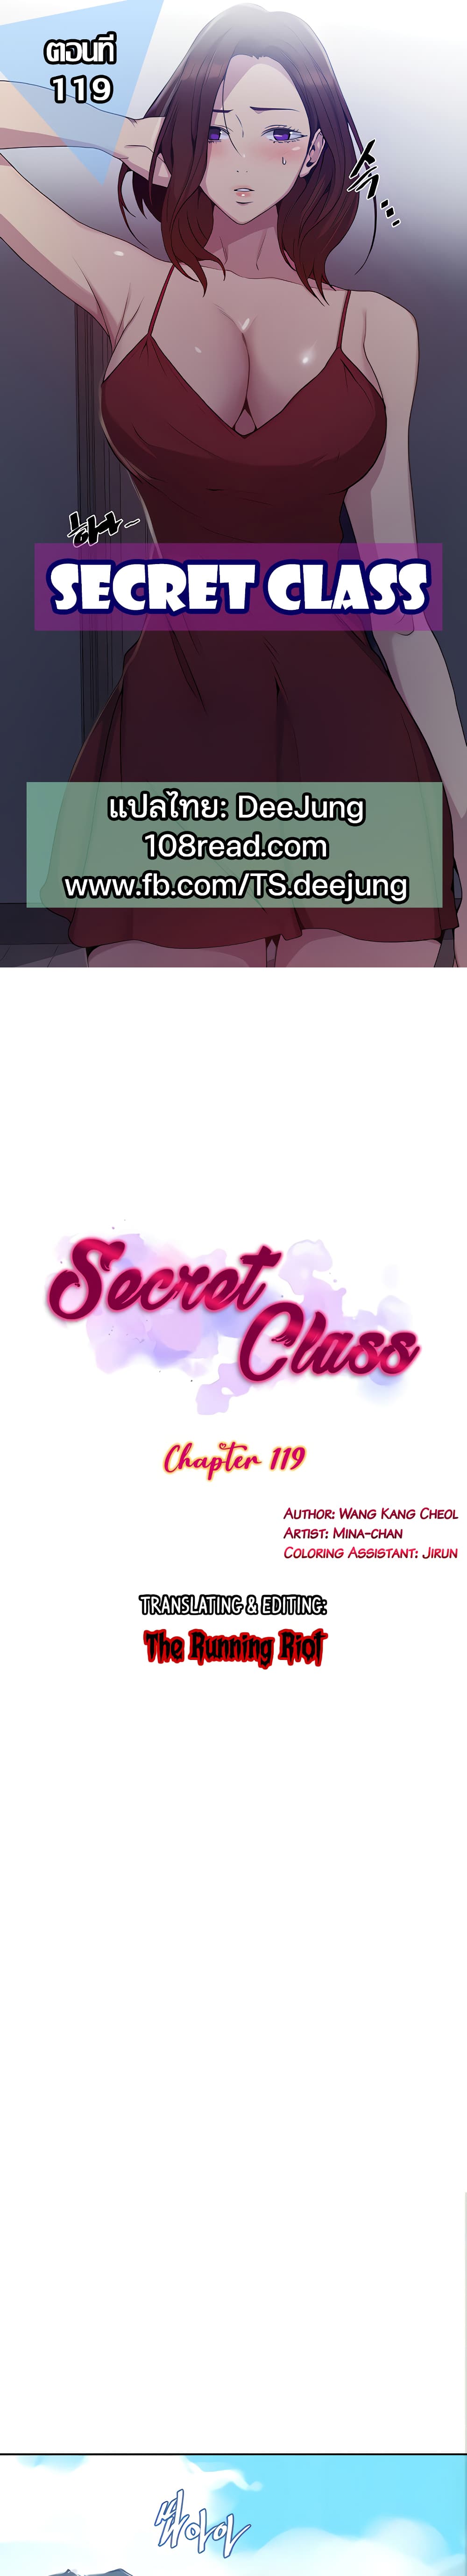 Secret Class 119 (1)